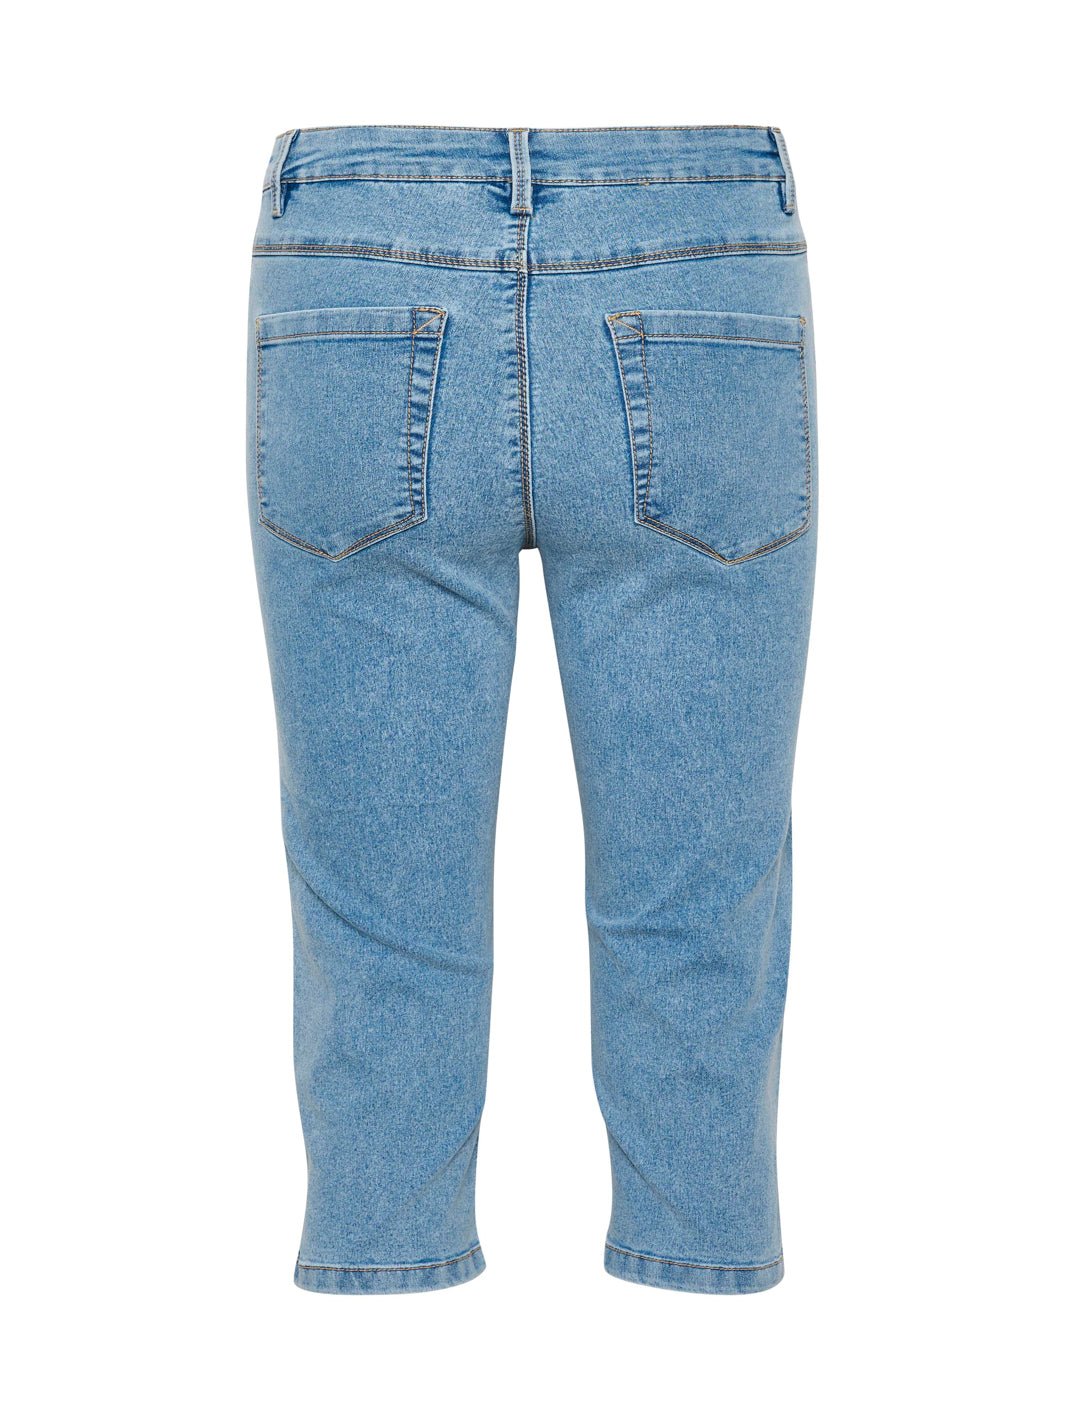 Kaffe KAvicky capri jeans light blue washed - Online-Mode